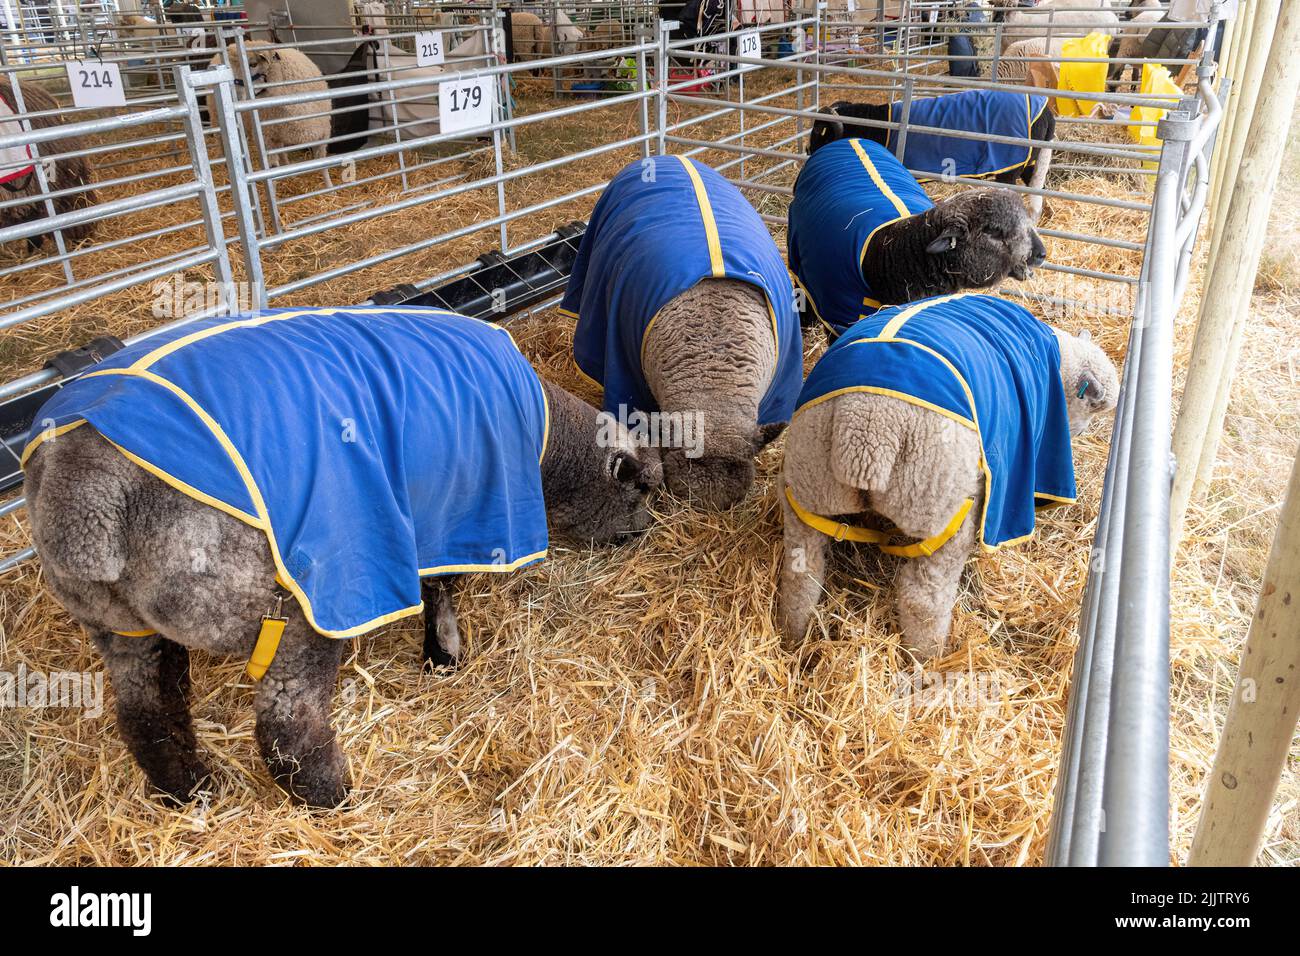 La tente de moutons au New Forest and Hampshire County Show en juillet 2022, Angleterre, Royaume-Uni. Mouton portant des couches de gel de refroidissement Banque D'Images